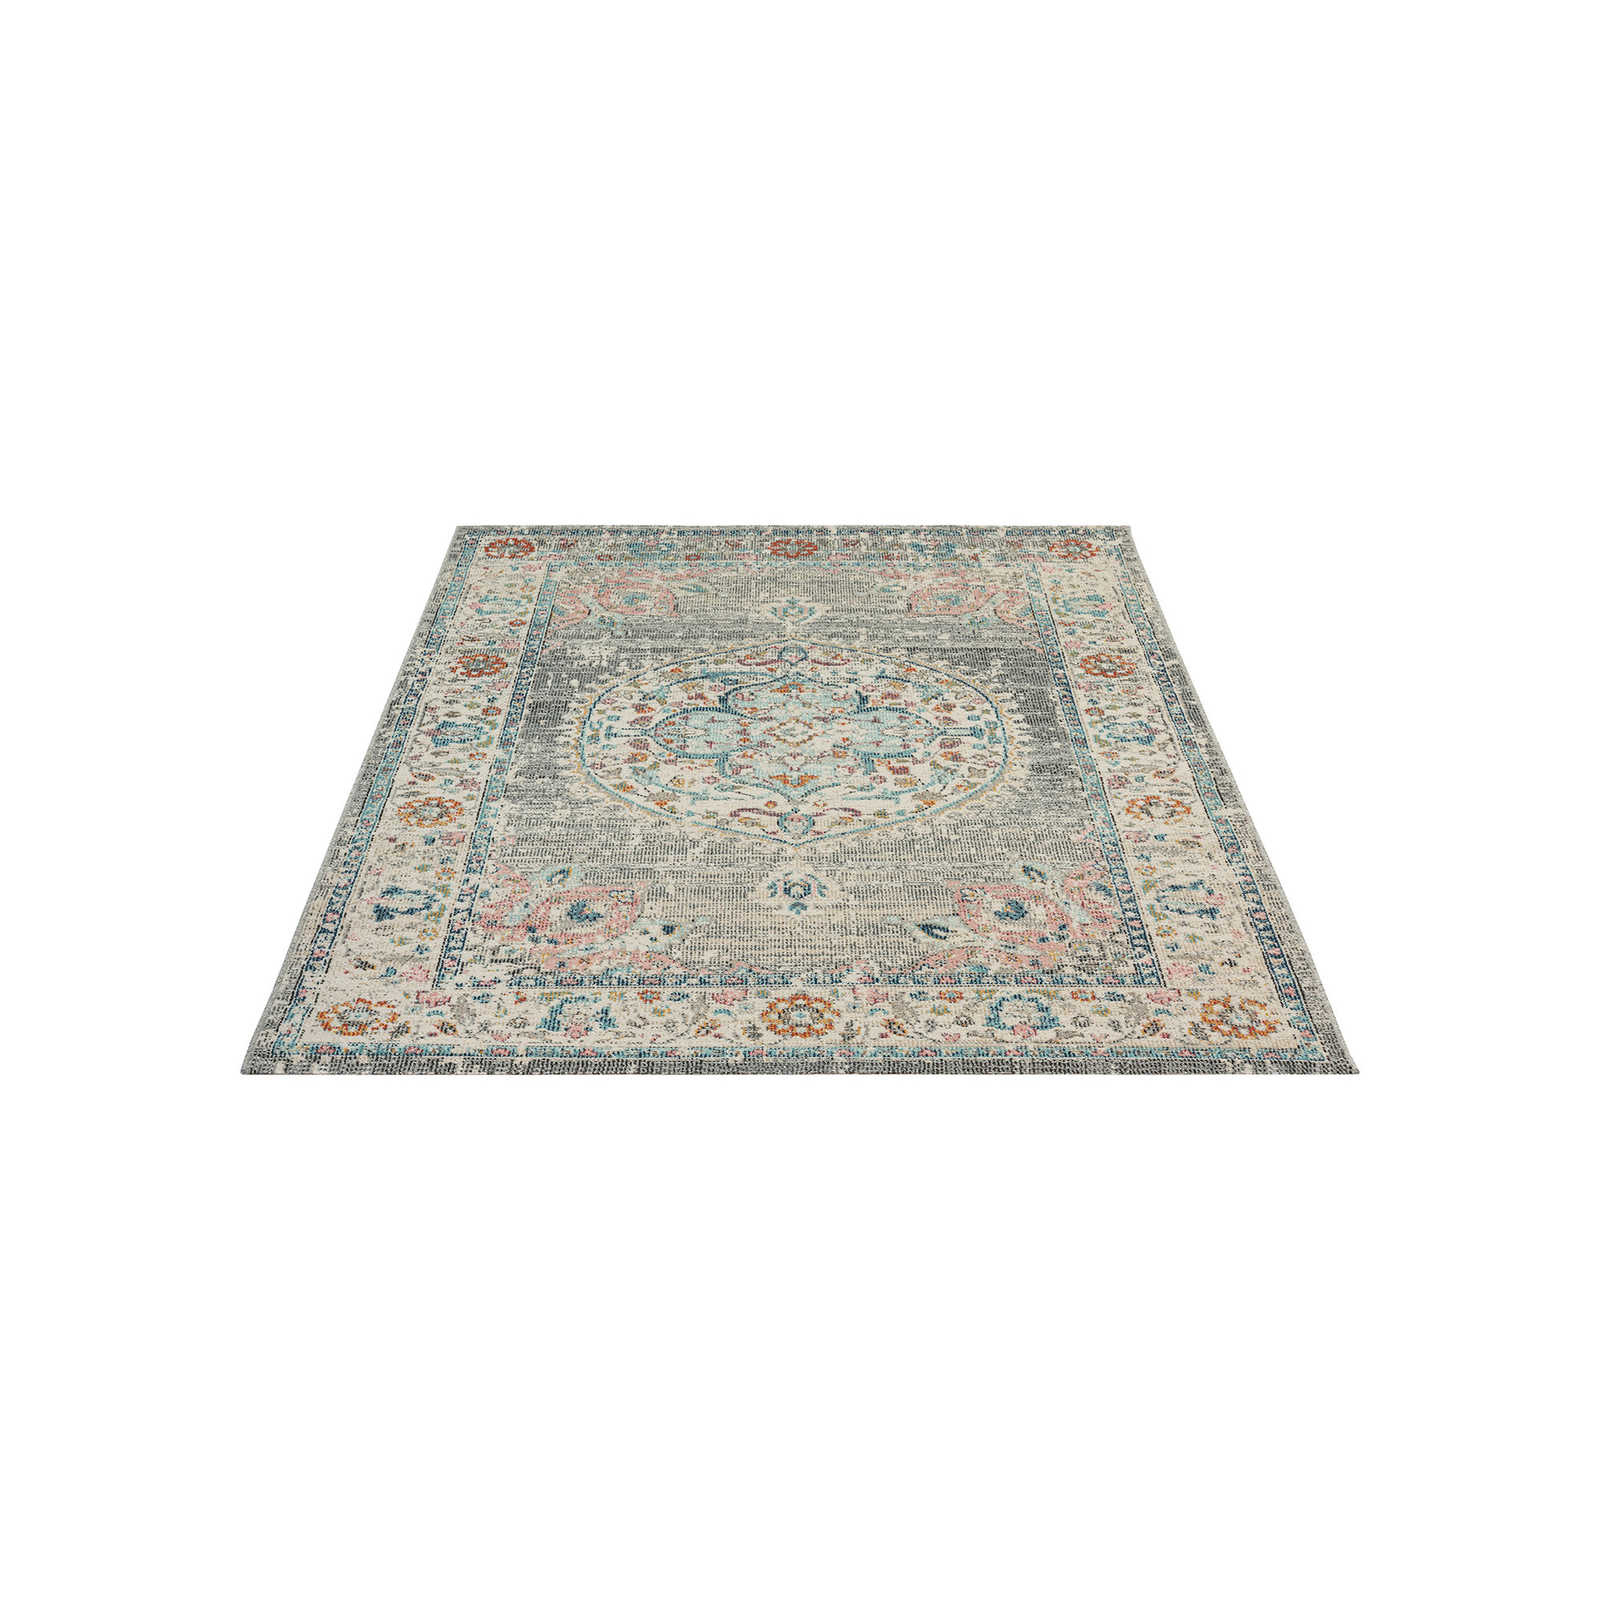 Grauer Outdoor Teppich aus Flachgewebe – 230 x 160 cm
